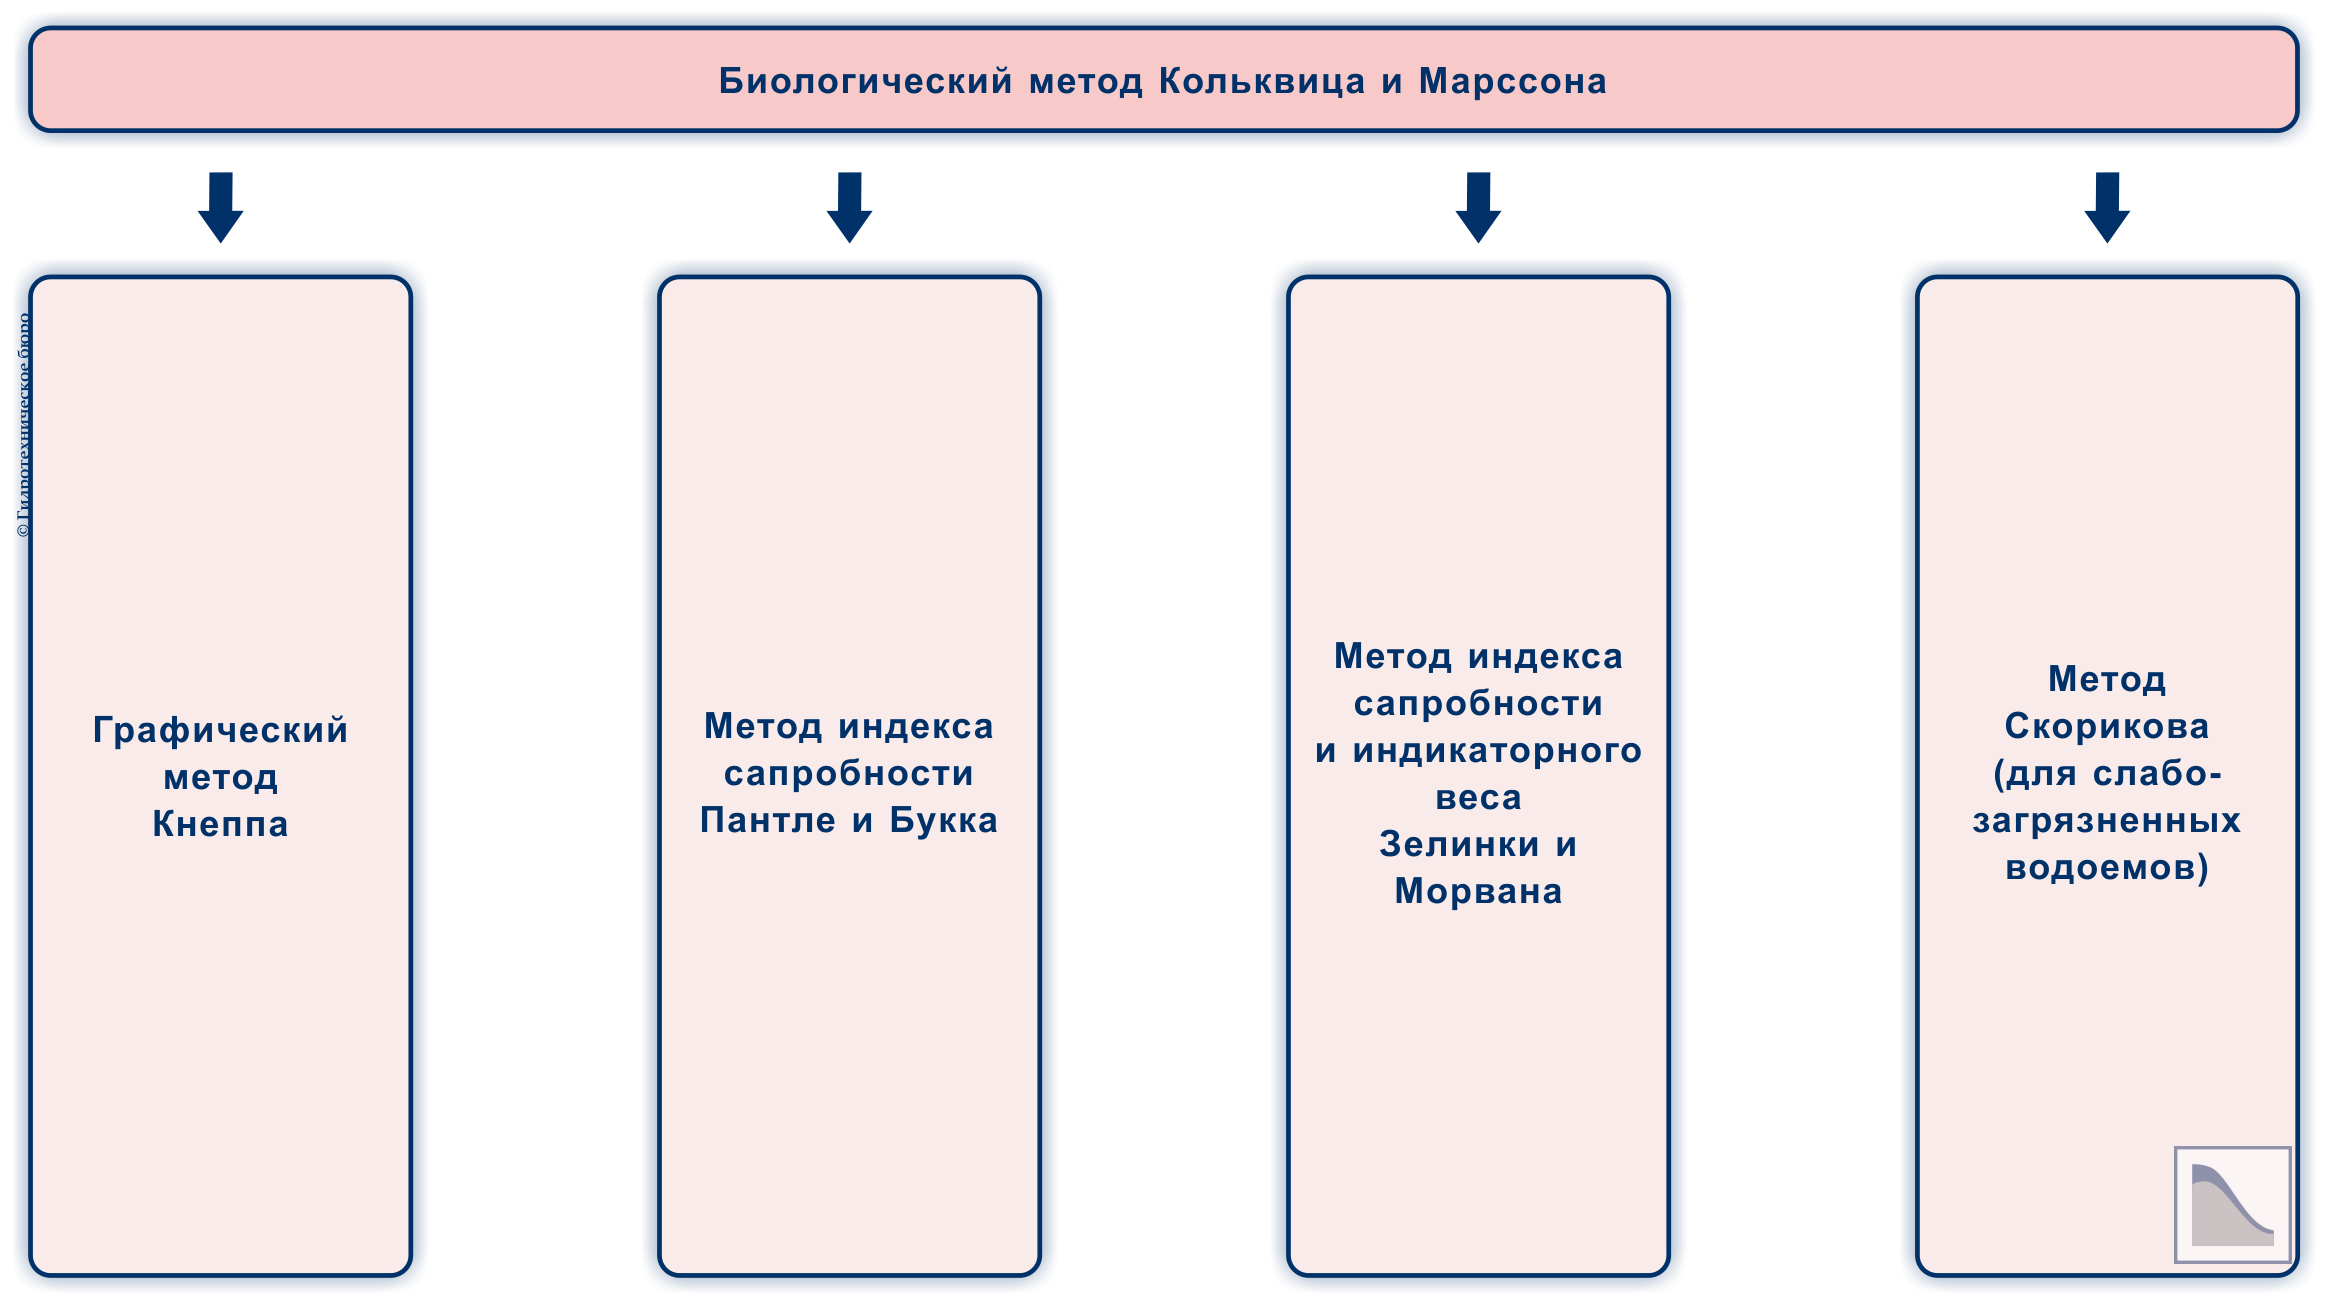 Метод Кольквица-Марссона и его модификации